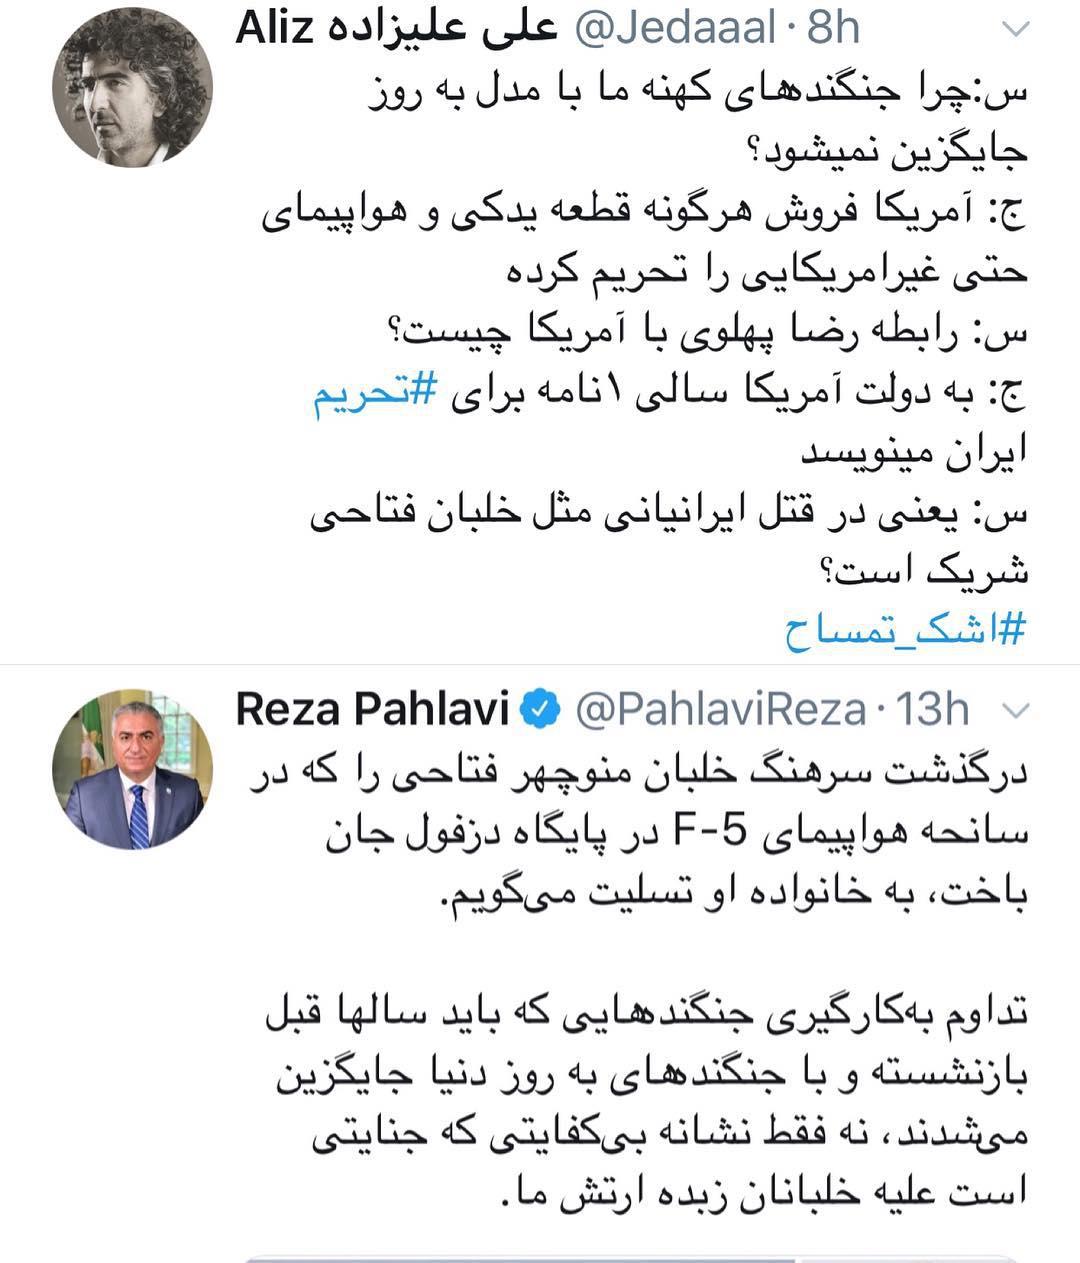 شراکت رضا پهلوی در قتل ایرانیانی مانند خلبان فتاحی